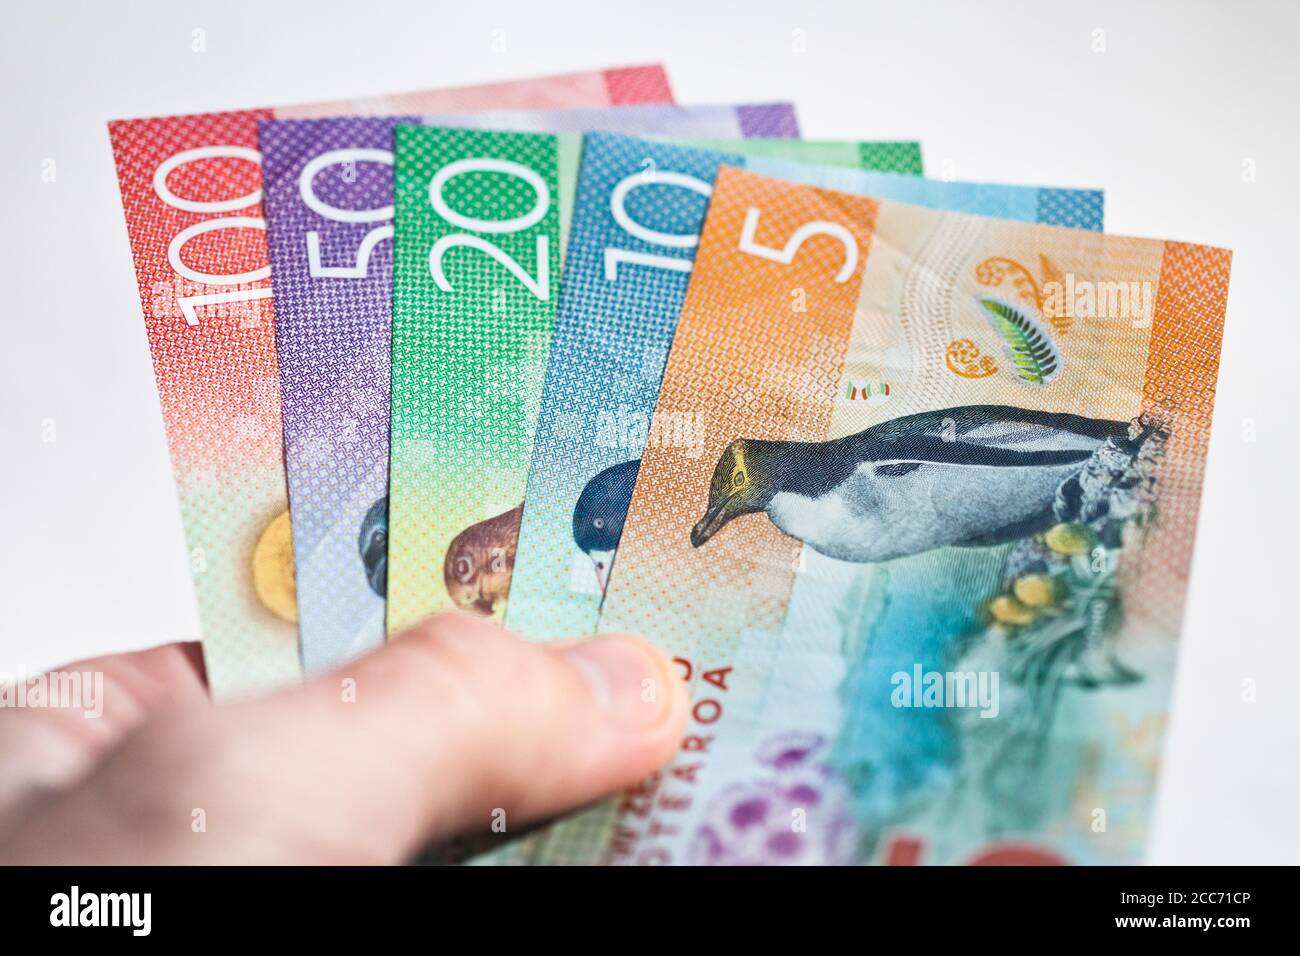 La monnaie néo-zélandaise a été maintenue dans une main Banque D'Images